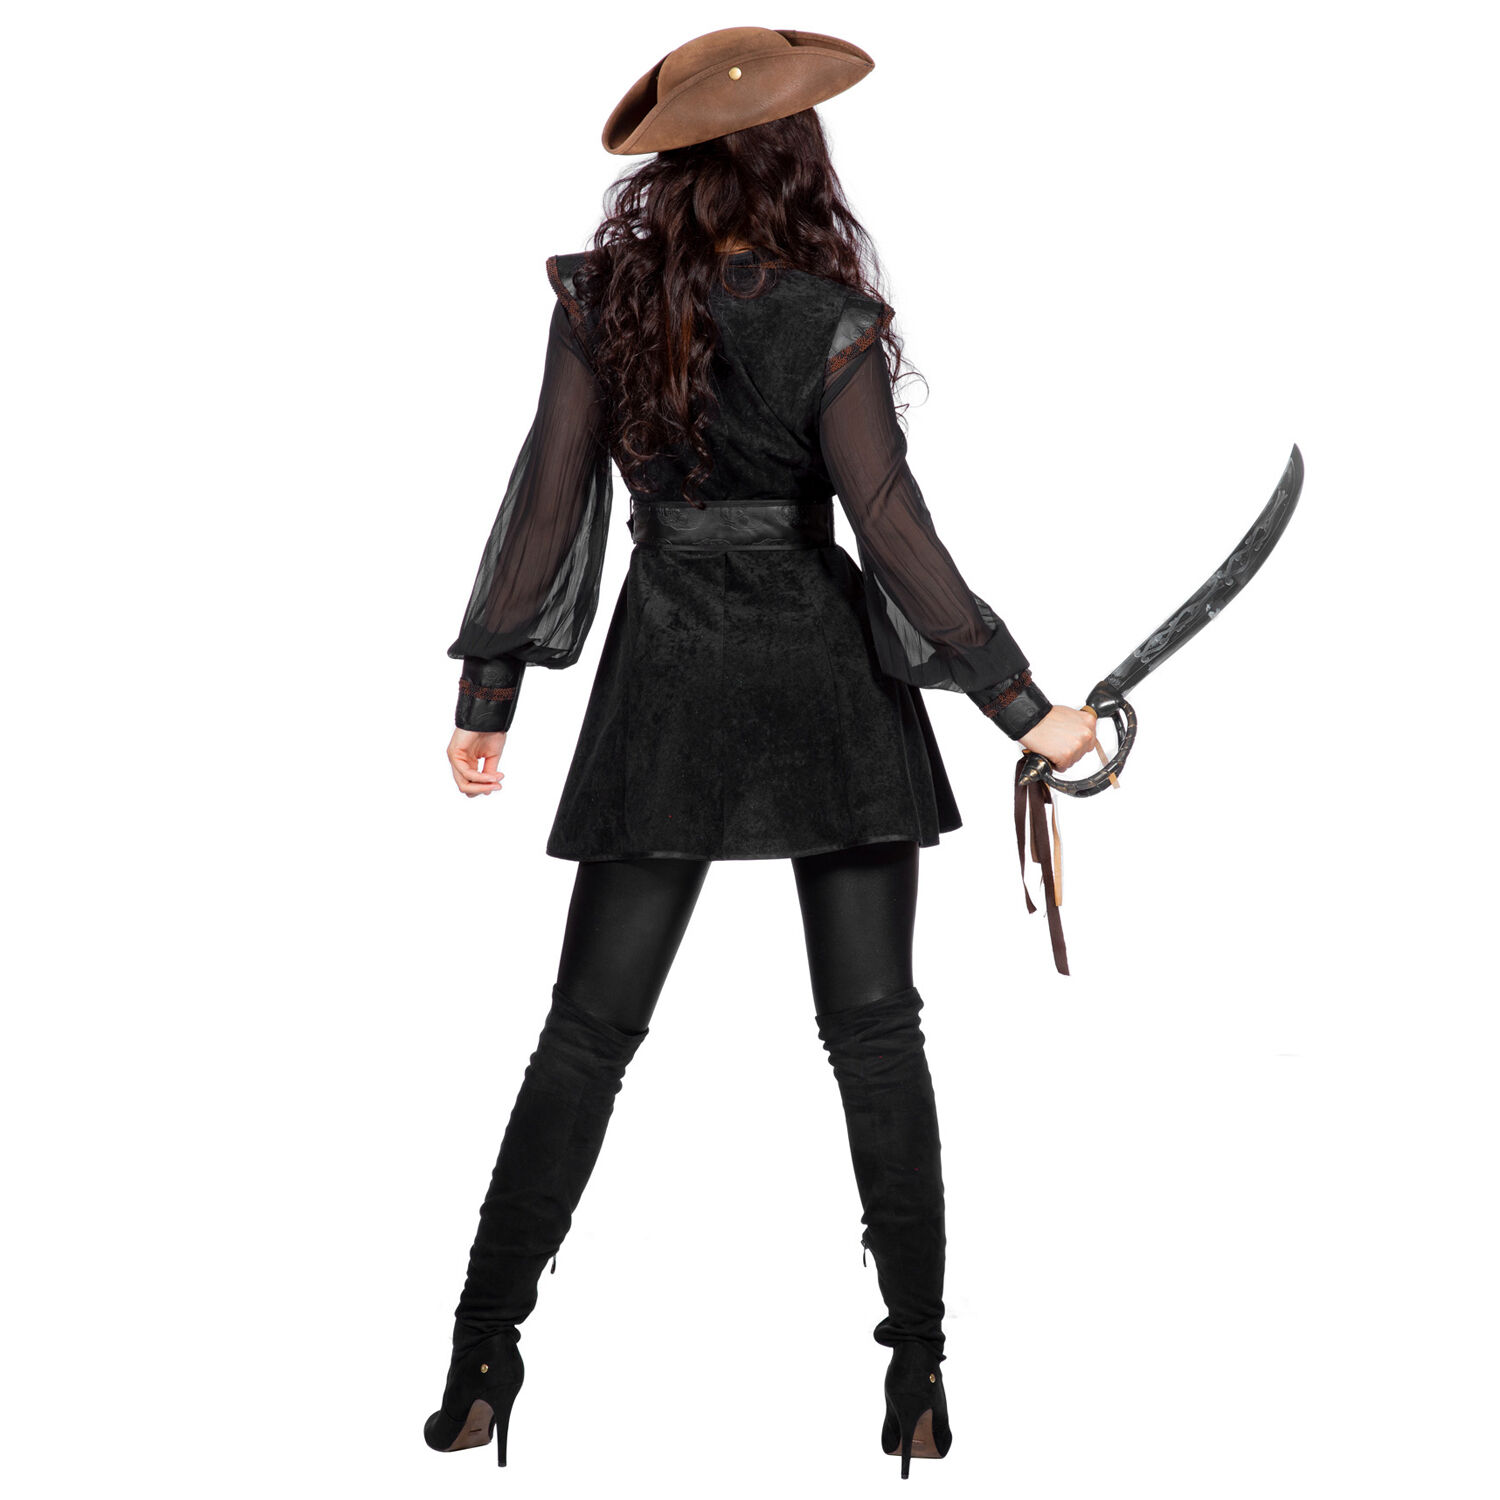 Damen-Kostüm schwarze Piratin / Voodoo Hexe Deluxe, Gr. 36 Bild 3